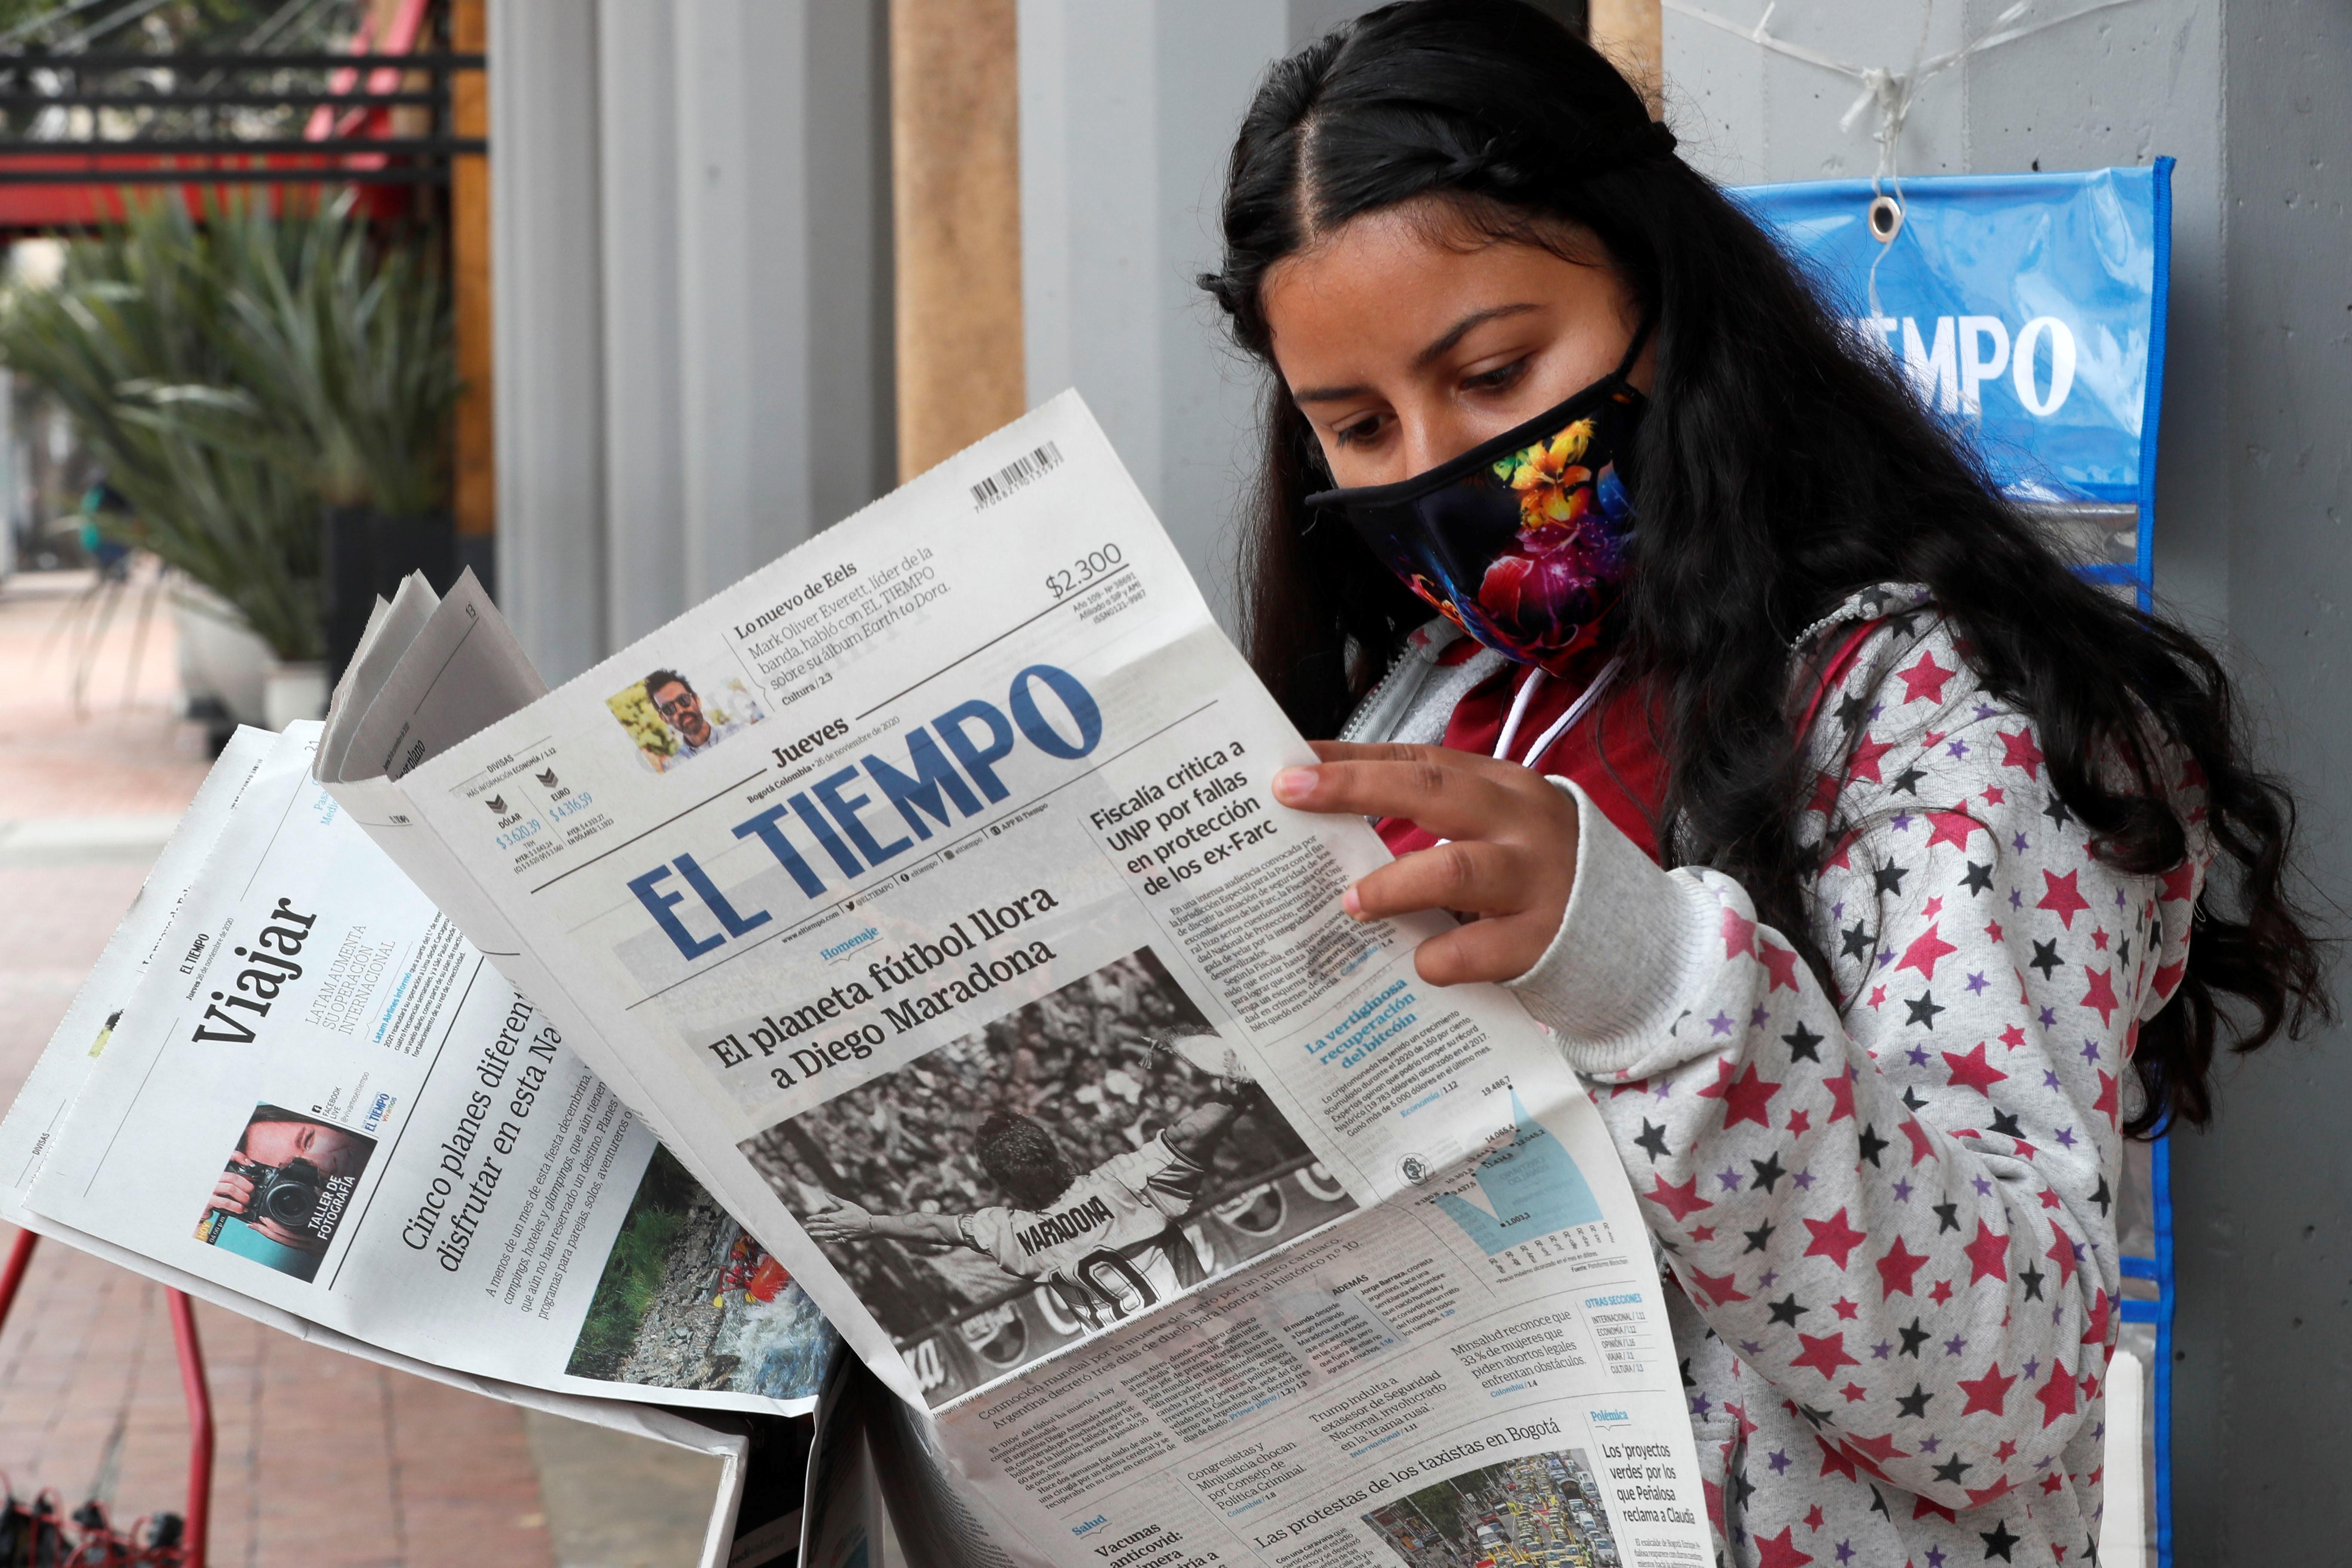 Una mujer lee el periódico El Tiempo, el cual registra en su portada el fallecimiento de Diego Armando Maradona. Foto Prensa Libre EFE.